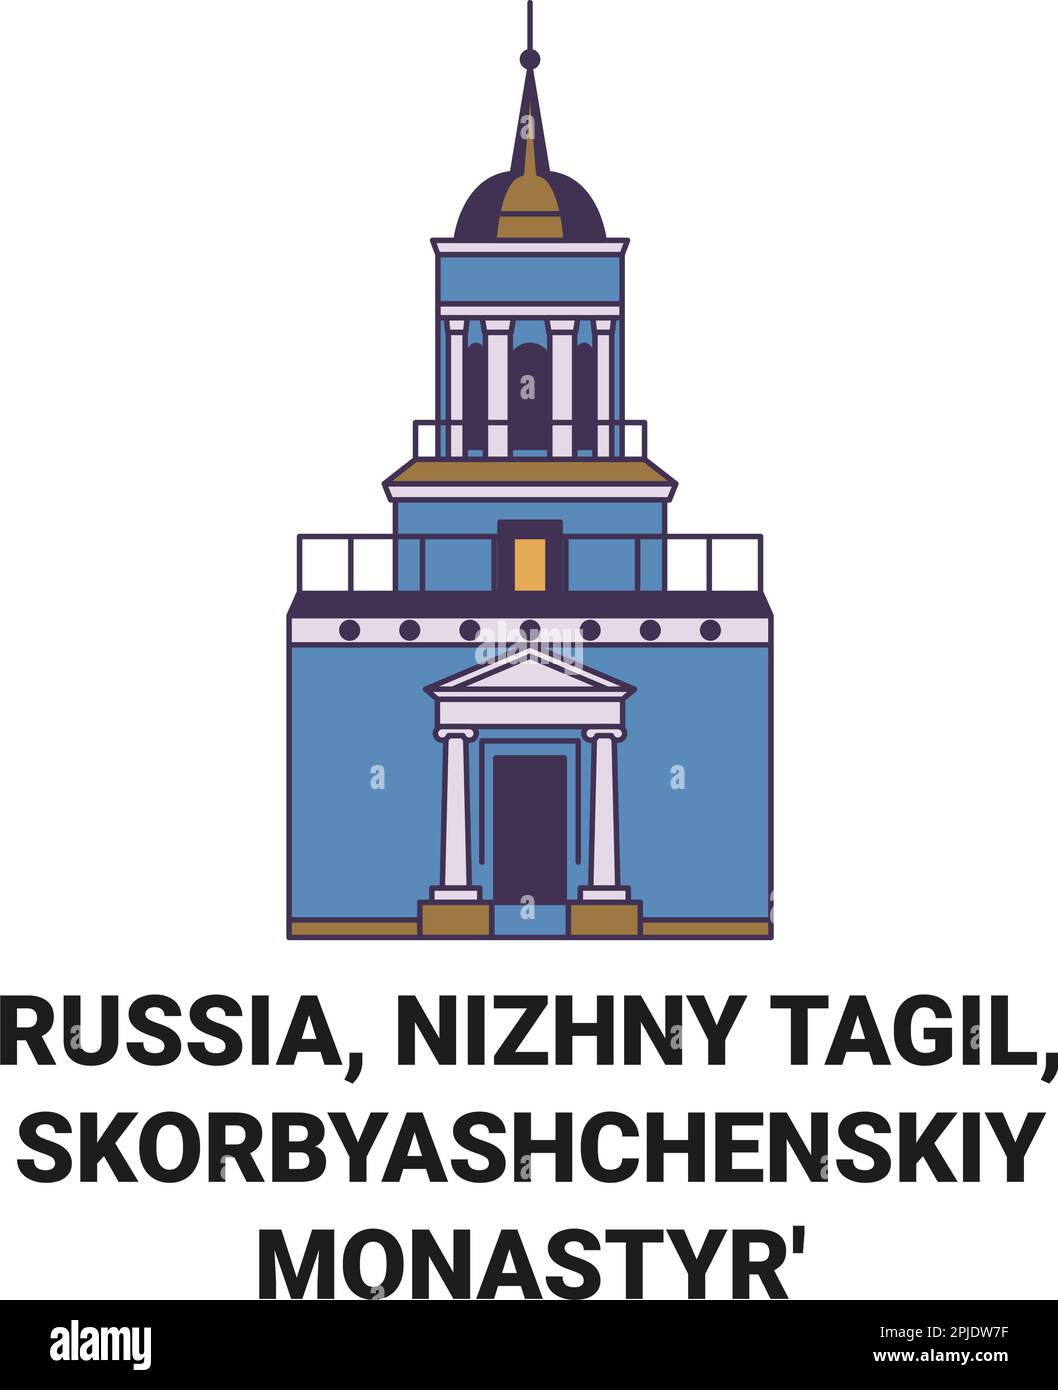 Russia, Nizhny Tagil, Skorbyashchenskiy Monastyr' travel landmark vector illustration Stock Vector